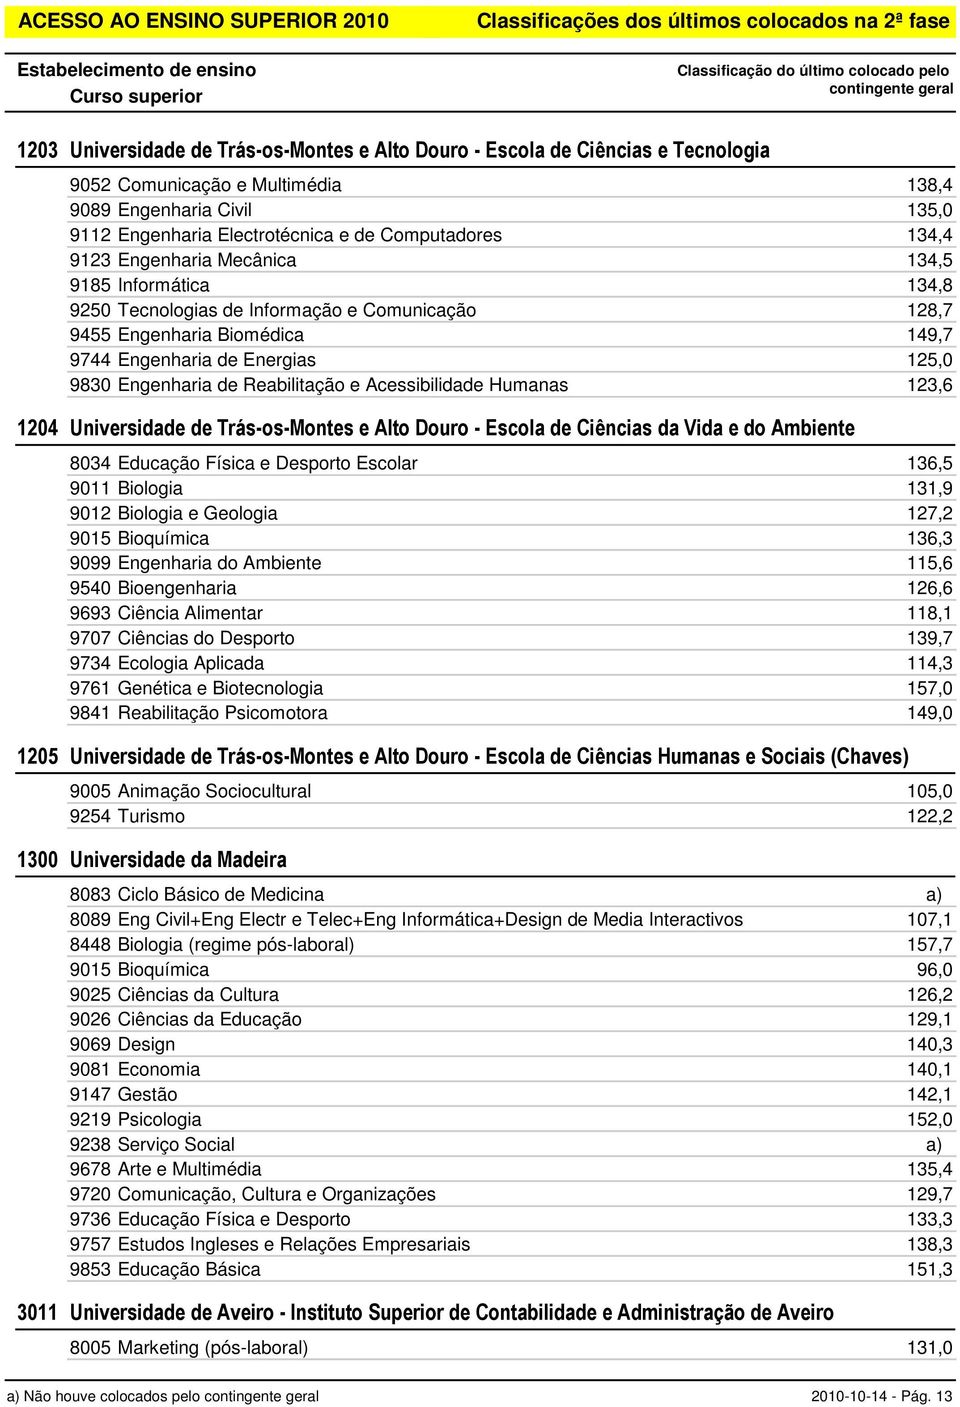 Acessibilidade Humanas 123,6 1204 Universidade de Trás-os-Montes e Alto Douro - Escola de Ciências da Vida e do Ambiente 8034 Educação Física e Desporto Escolar 136,5 9011 Biologia 131,9 9012